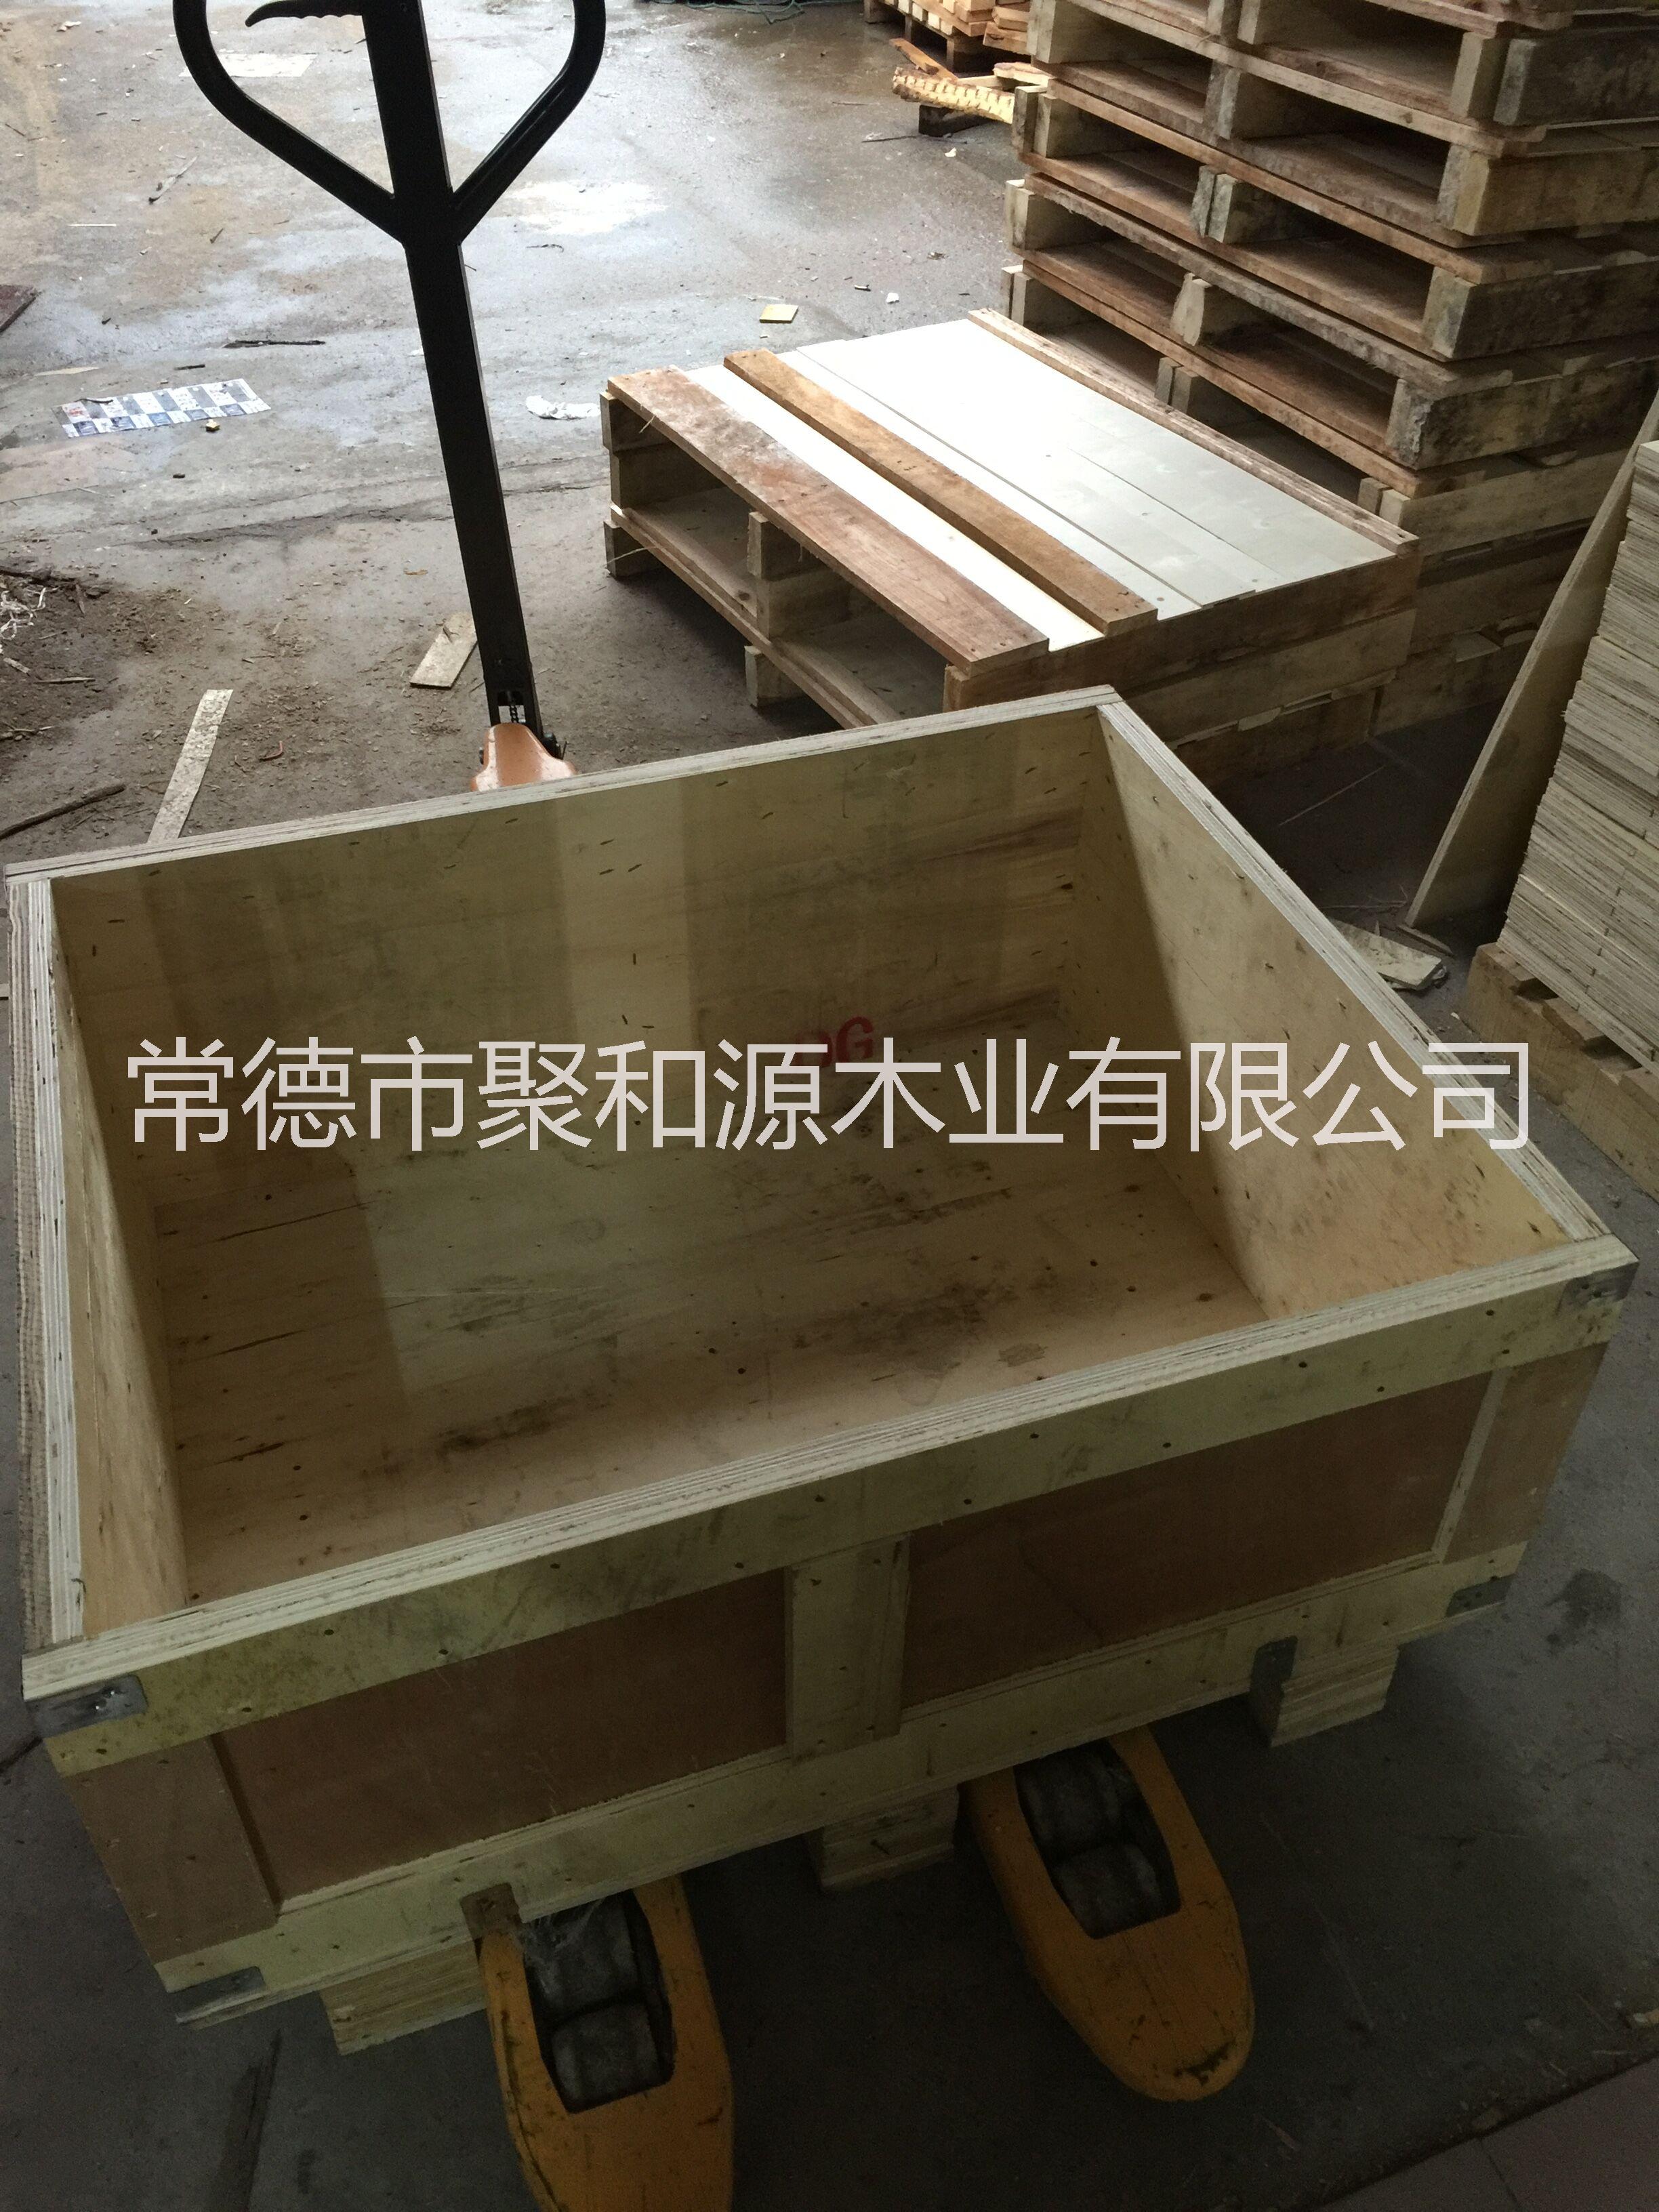 常德市科兴木业专业生产木箱托盘批发